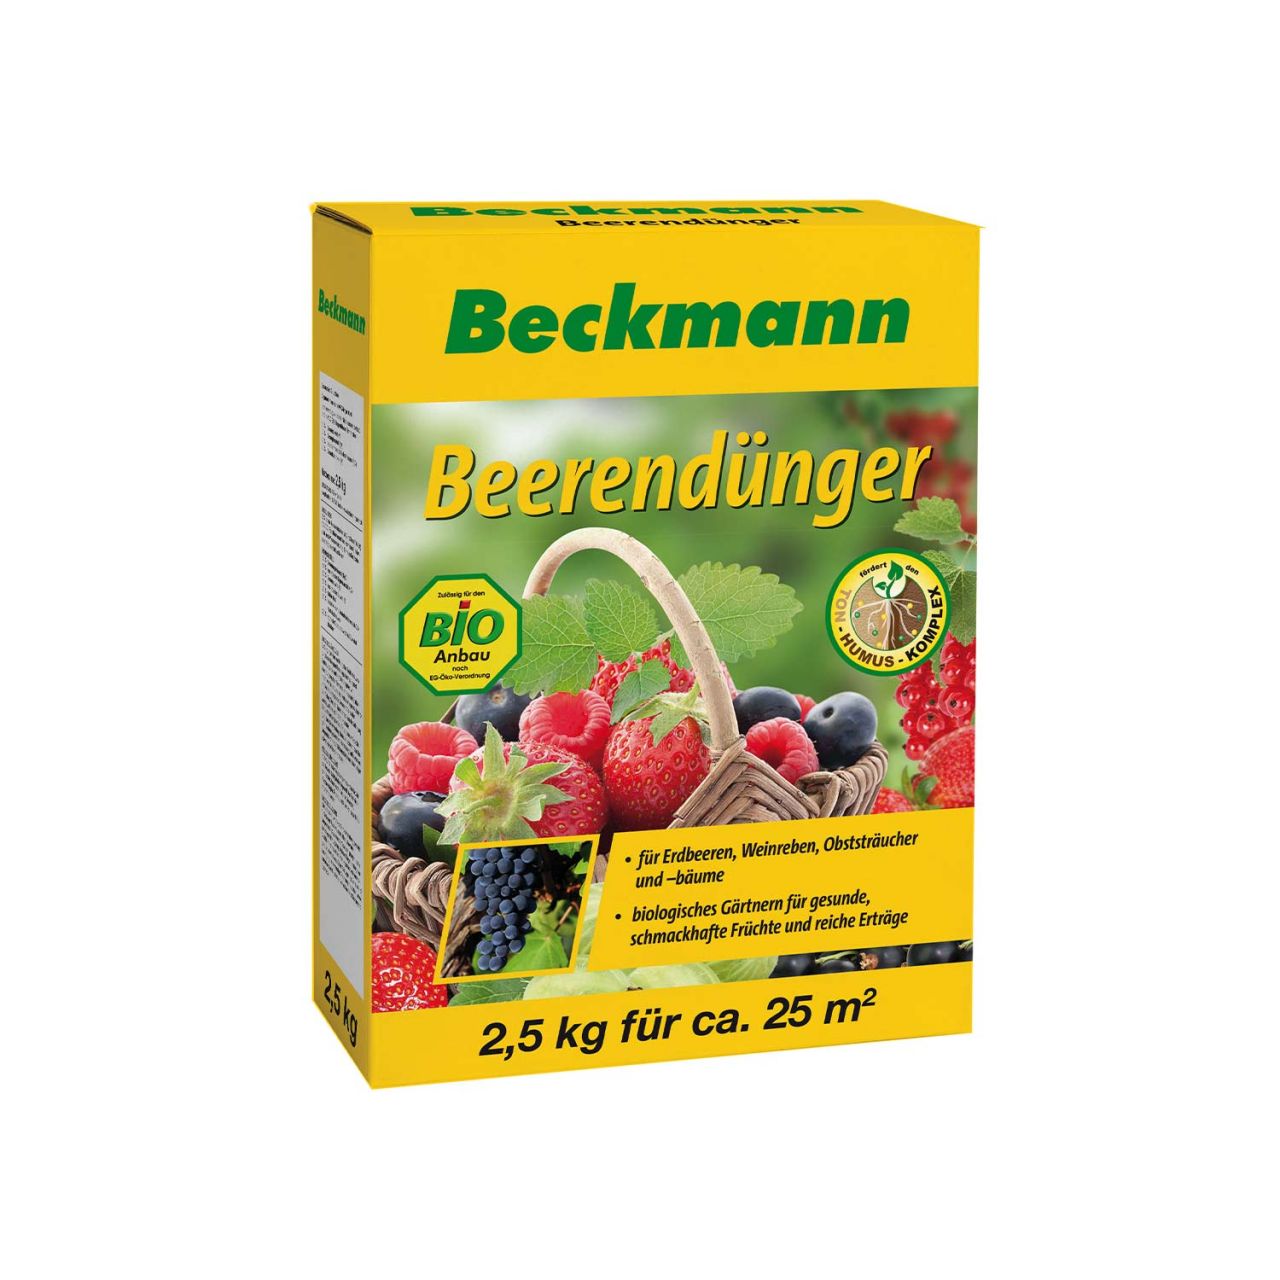 Beckmann Beerendünger – 2,5 kg